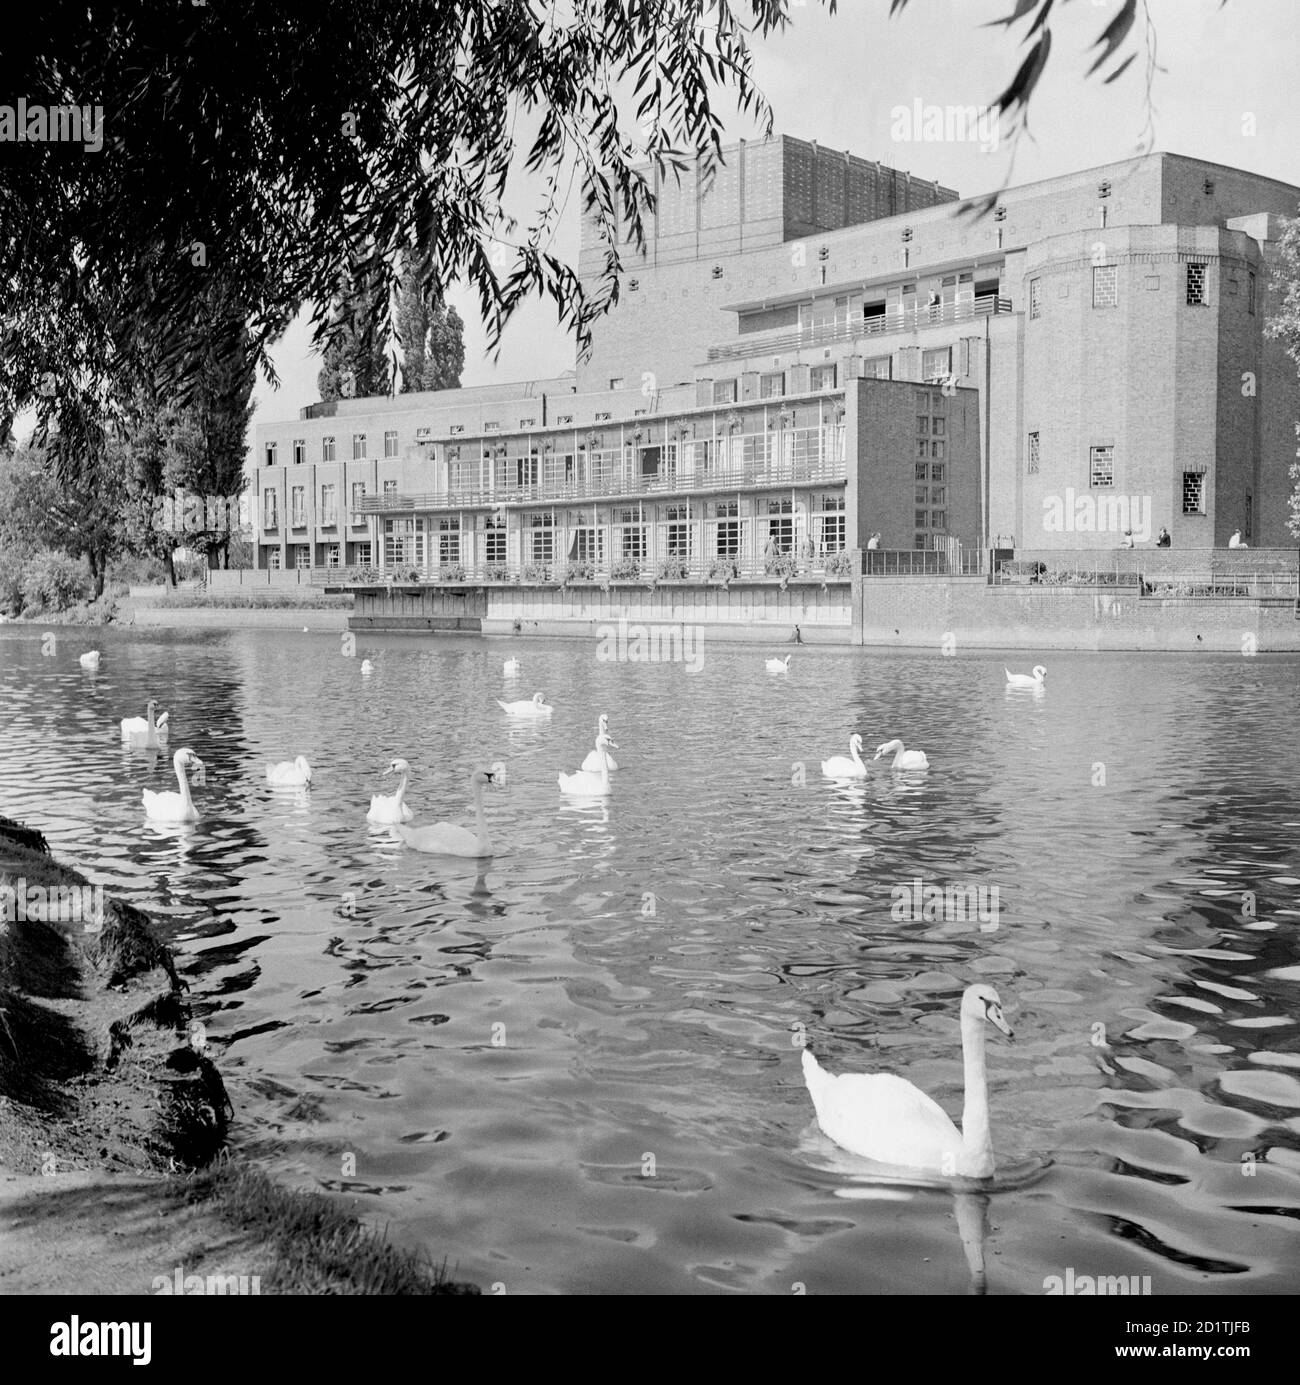 THÉÂTRE ROYAL DE SHAKESPEARE, Stratford-upon-Avon, Warwickshire. Vue sur le théâtre royal de Shakespeare à Stratford-upon-Avon, face à la rivière, avec des cygnes au premier plan. Il a été conçu par Elizabeth Scott et terminé en 1932. Photographié par Eric de Mare entre 1945 et 1980. Banque D'Images